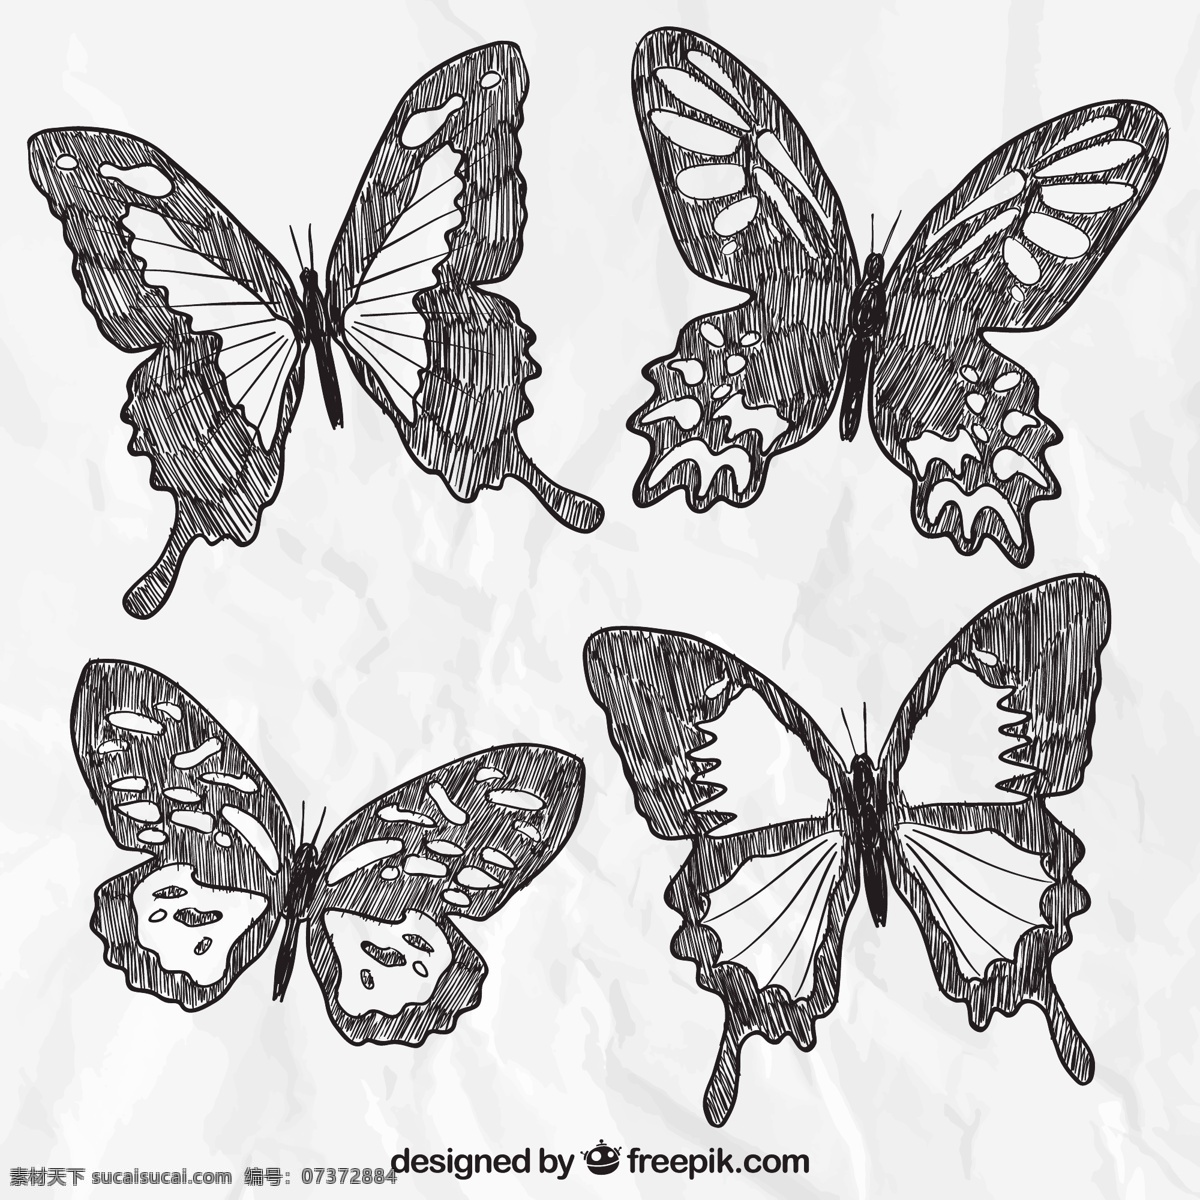 手绘蝴蝶 蝴蝶 动物 绘制 翅膀 绘图 手工 绘画 昆虫 抽纱 飞行 手绘 图标 高清 源文件